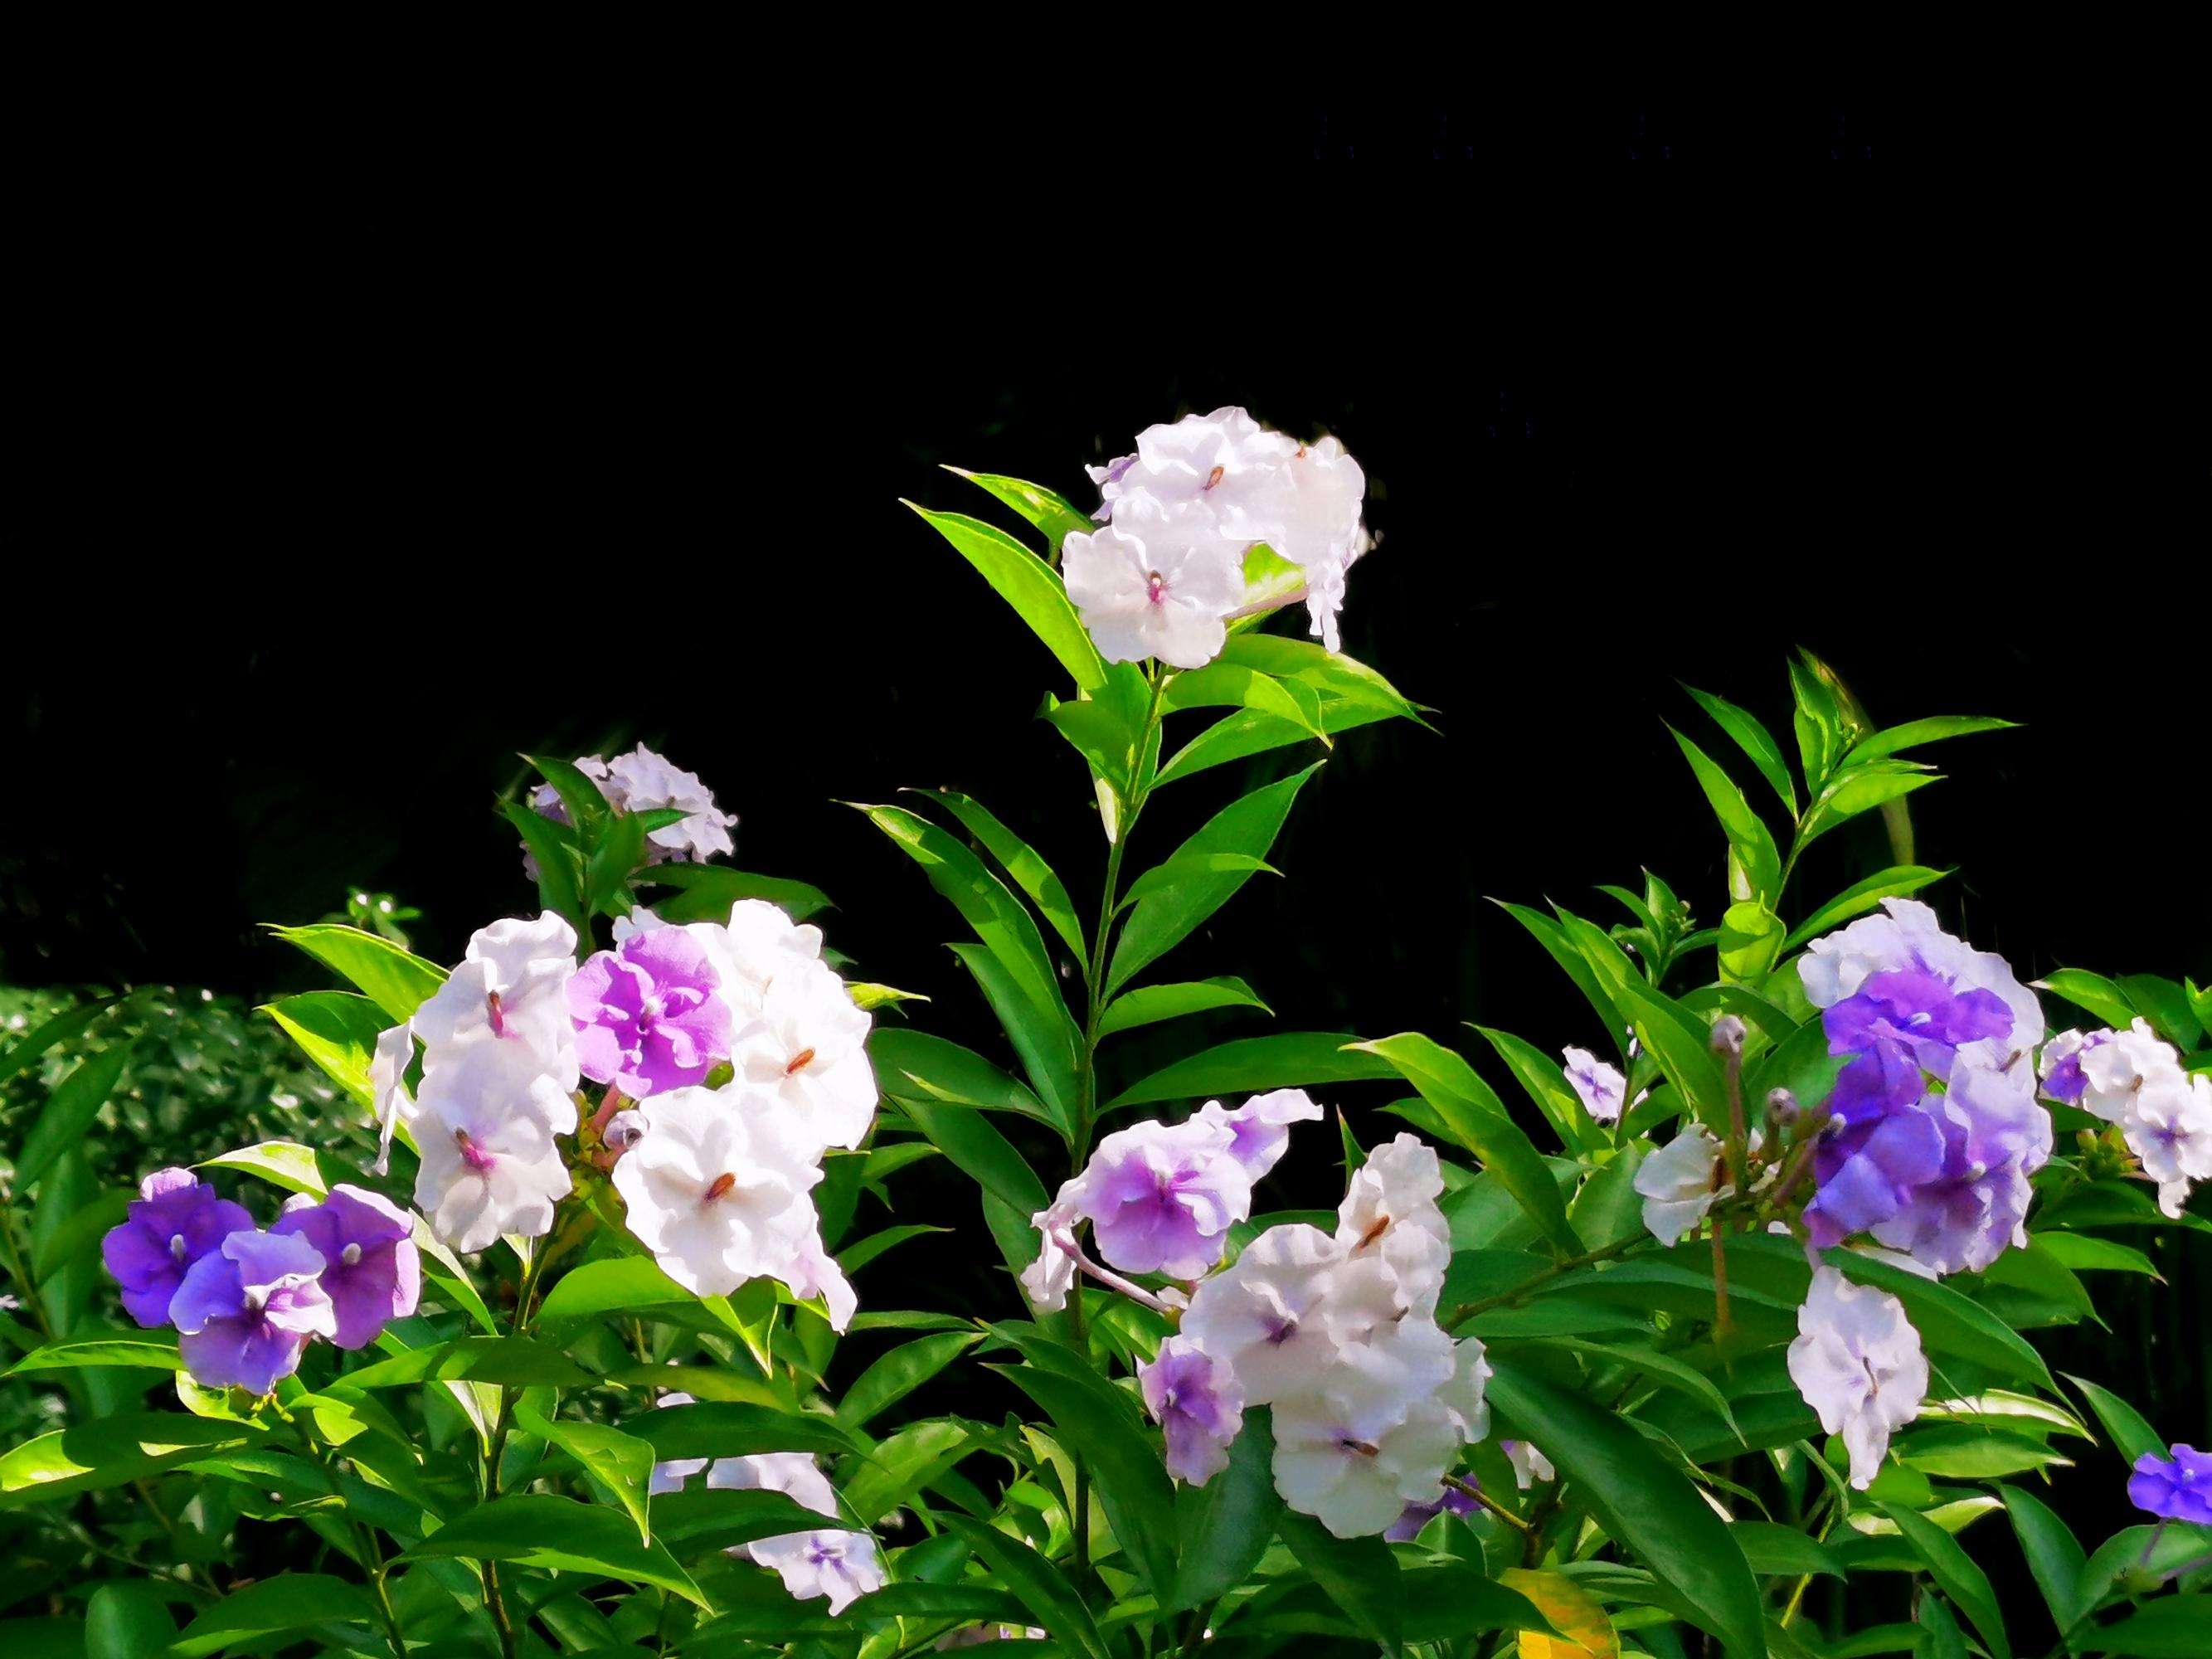 紫茉莉
,紫茉莉什么时候开花